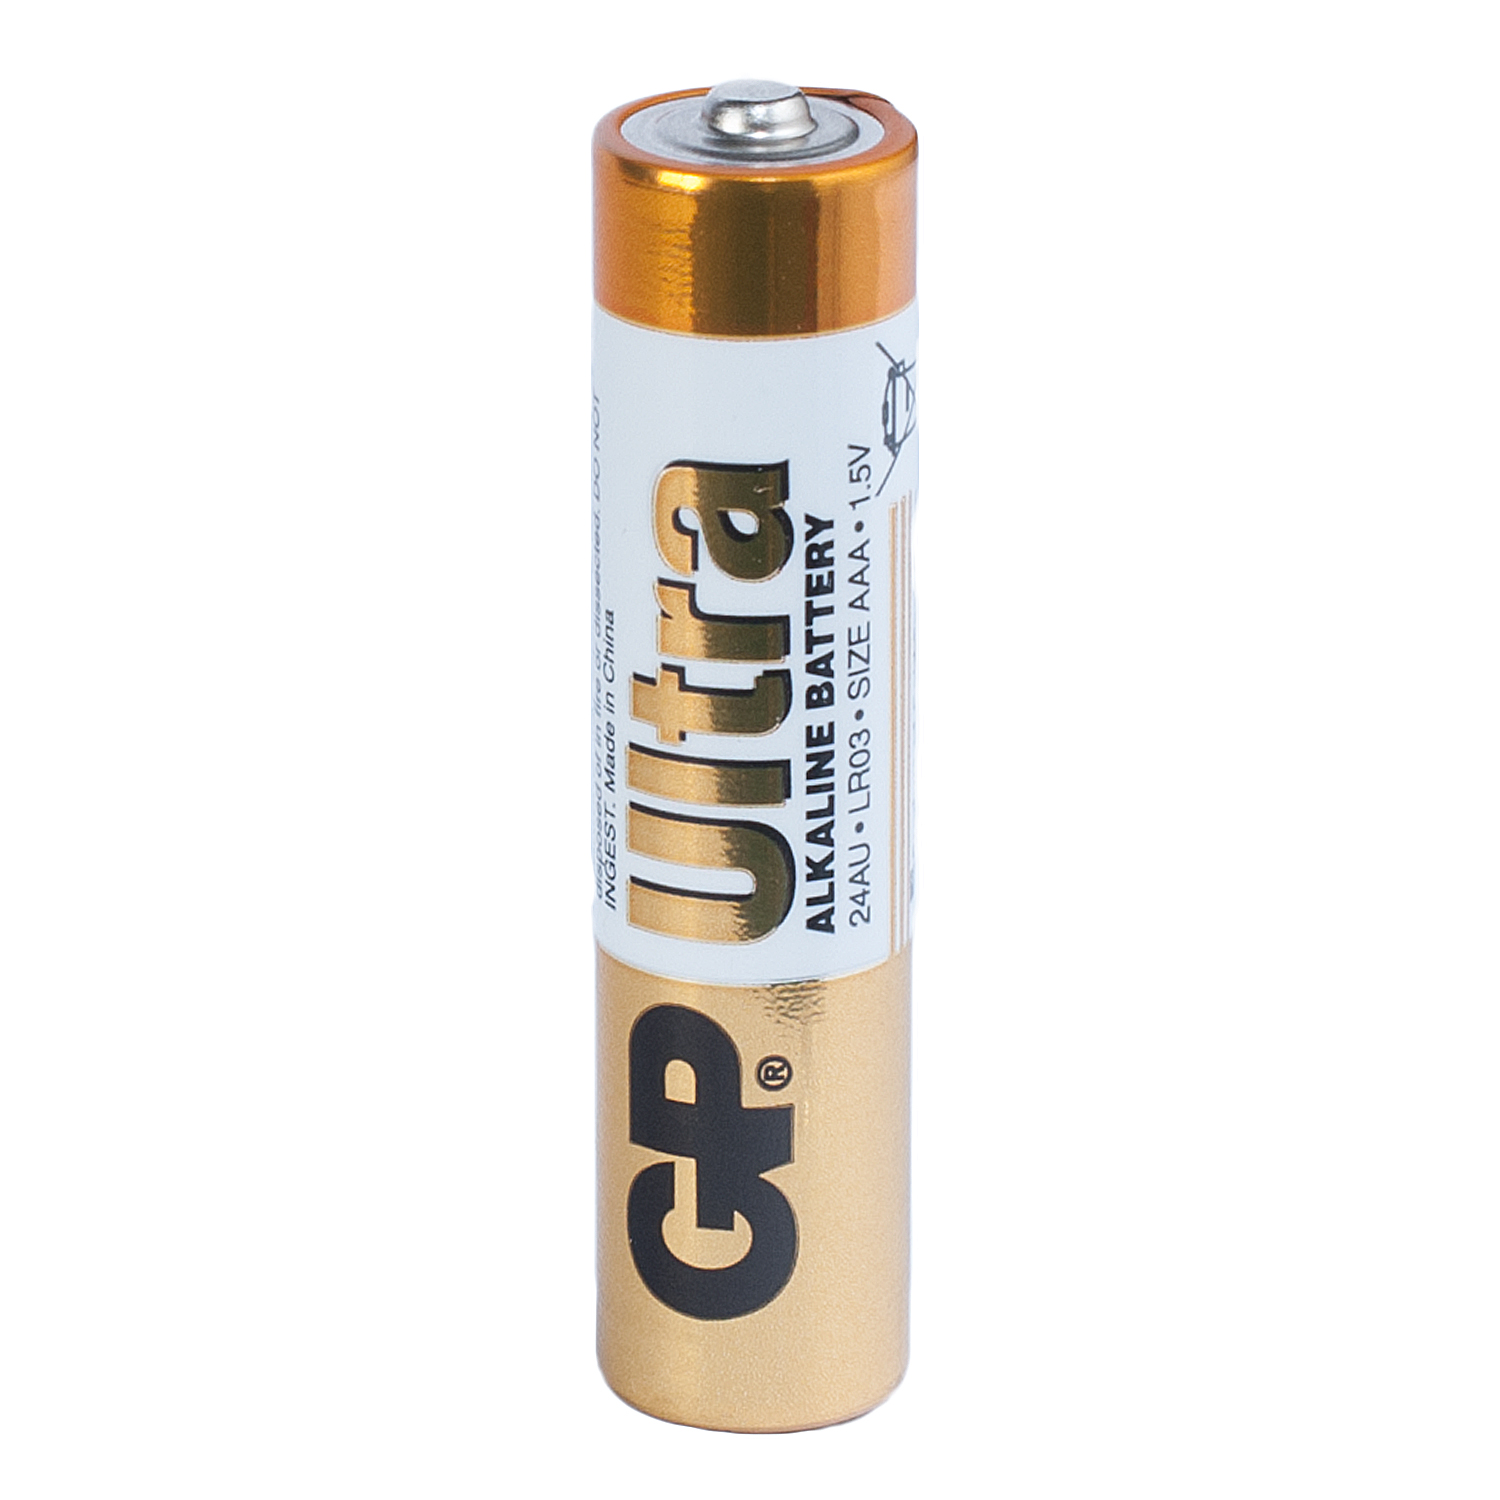 Батарейка AAA GP Ultra Alkaline LR03 - зображення 1